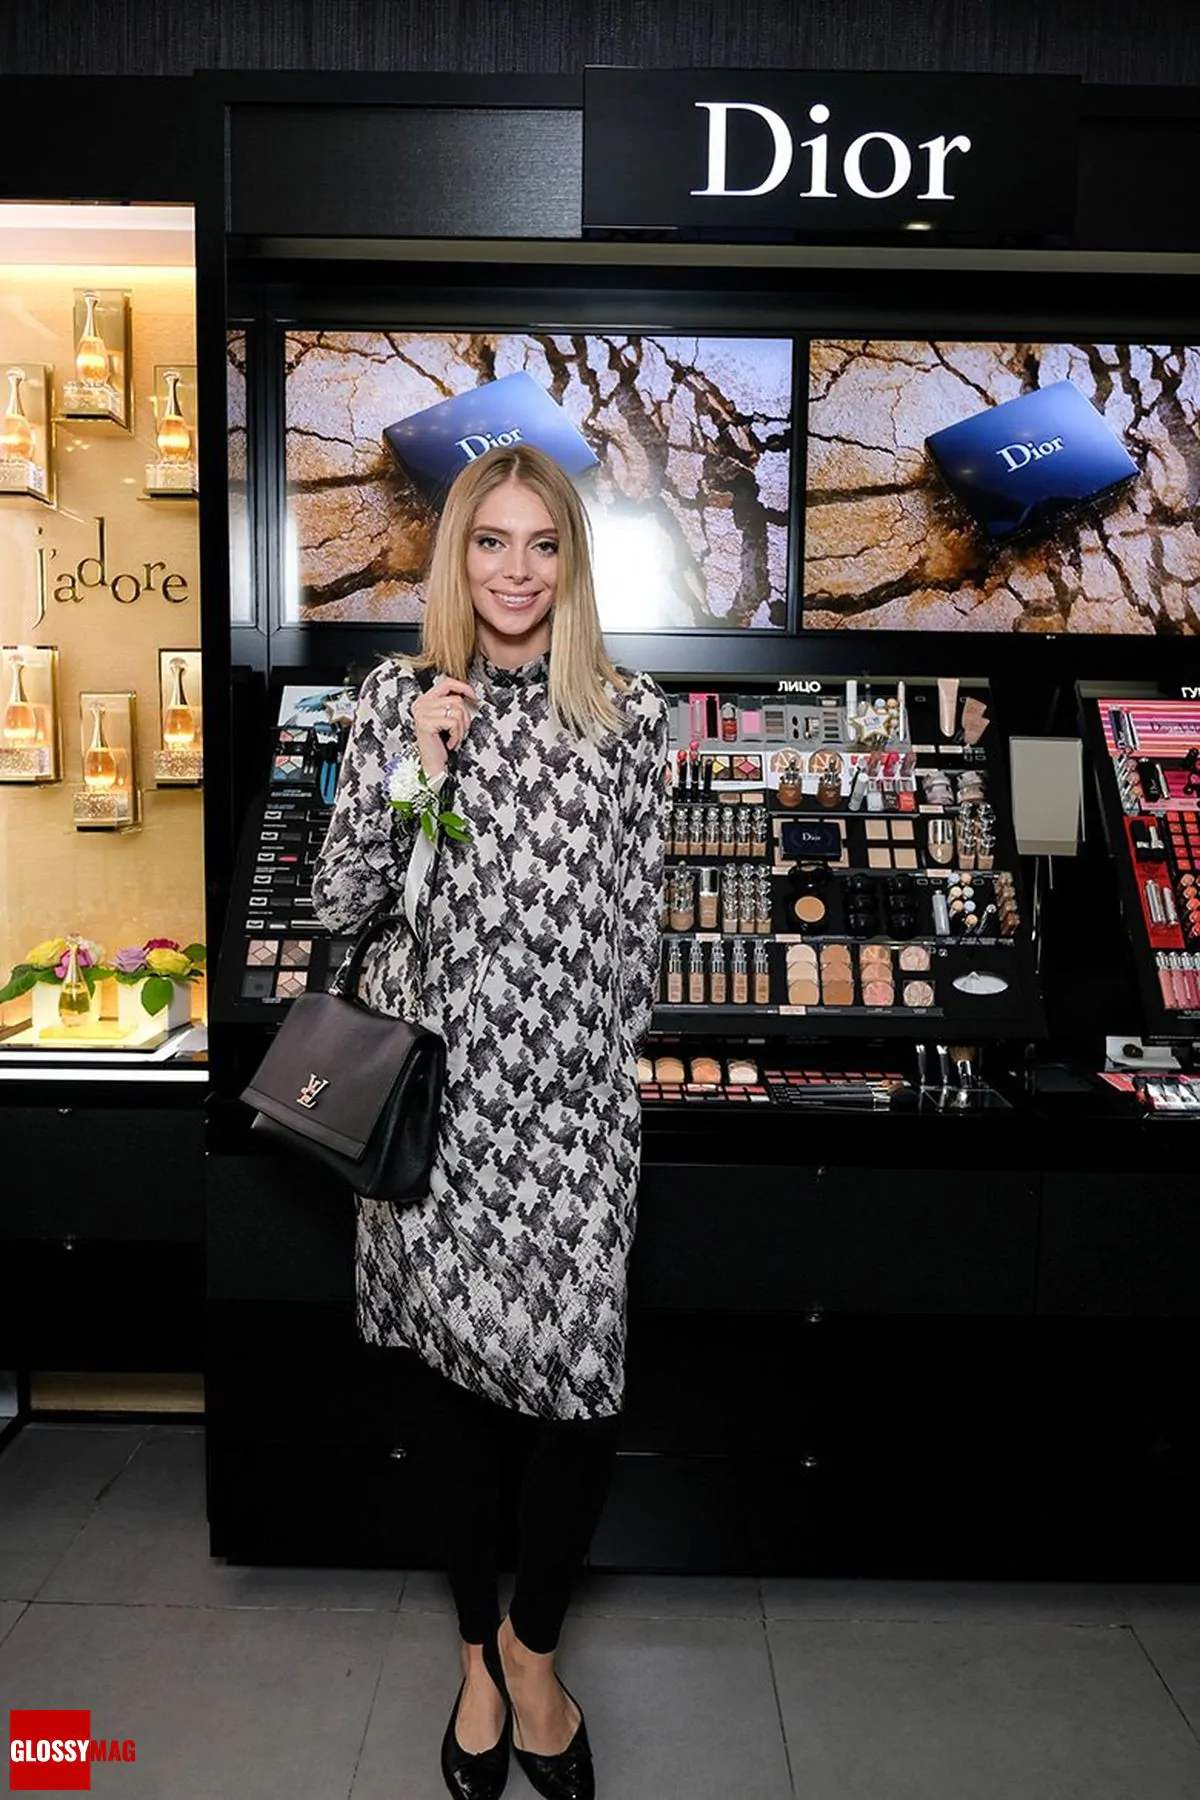 Ясмина Муратович в корнере Dior на закрытом мероприятии Beauty CHOICE в Rivoli Perfumery в ТГ Модный сезон, 28 июня 2017 г.